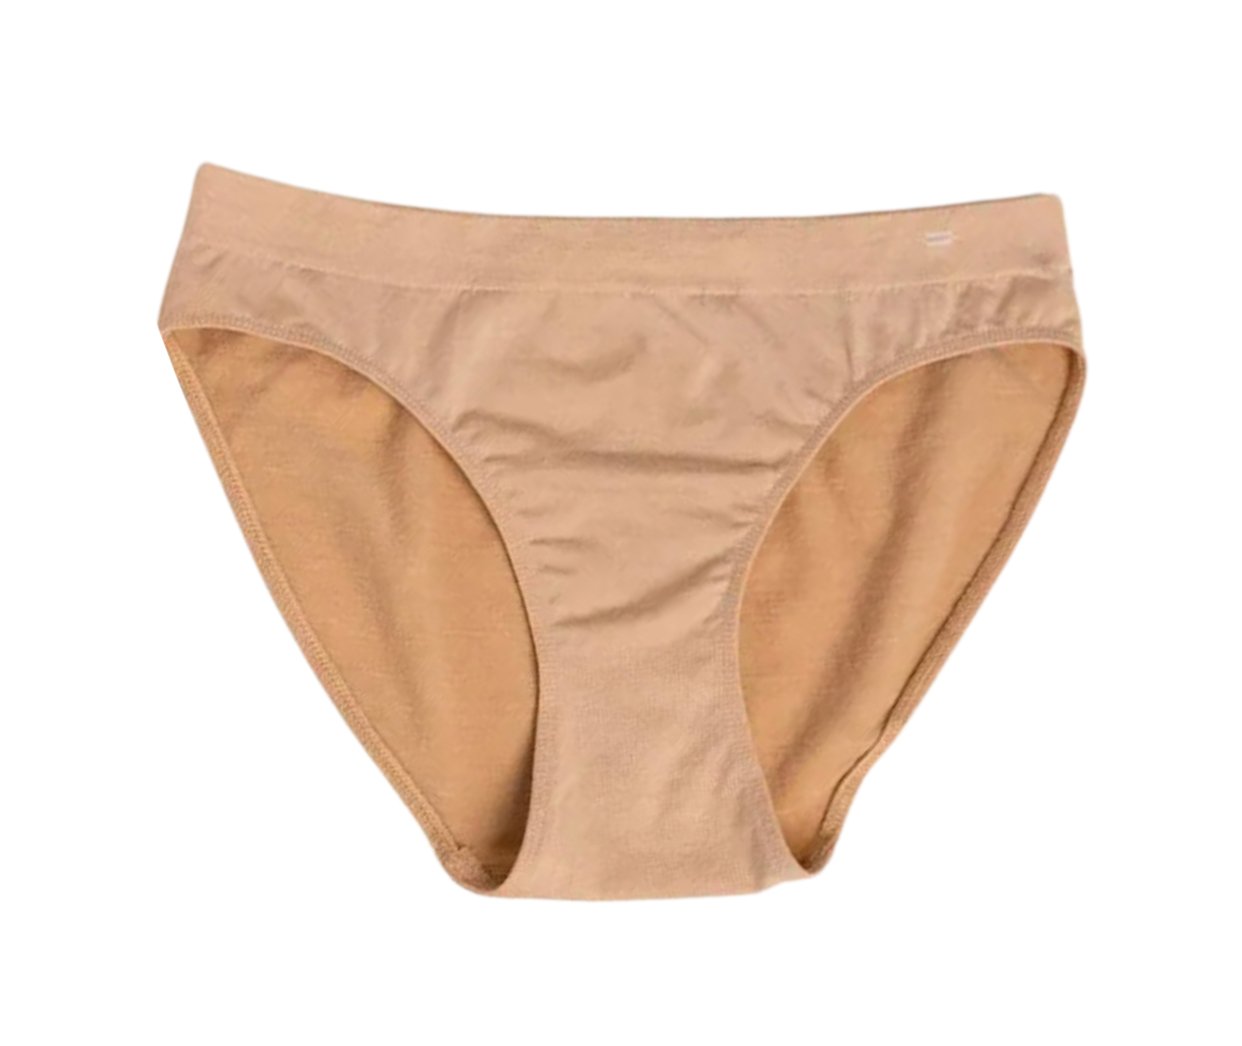 June Period Underwear - Beige – JUNE